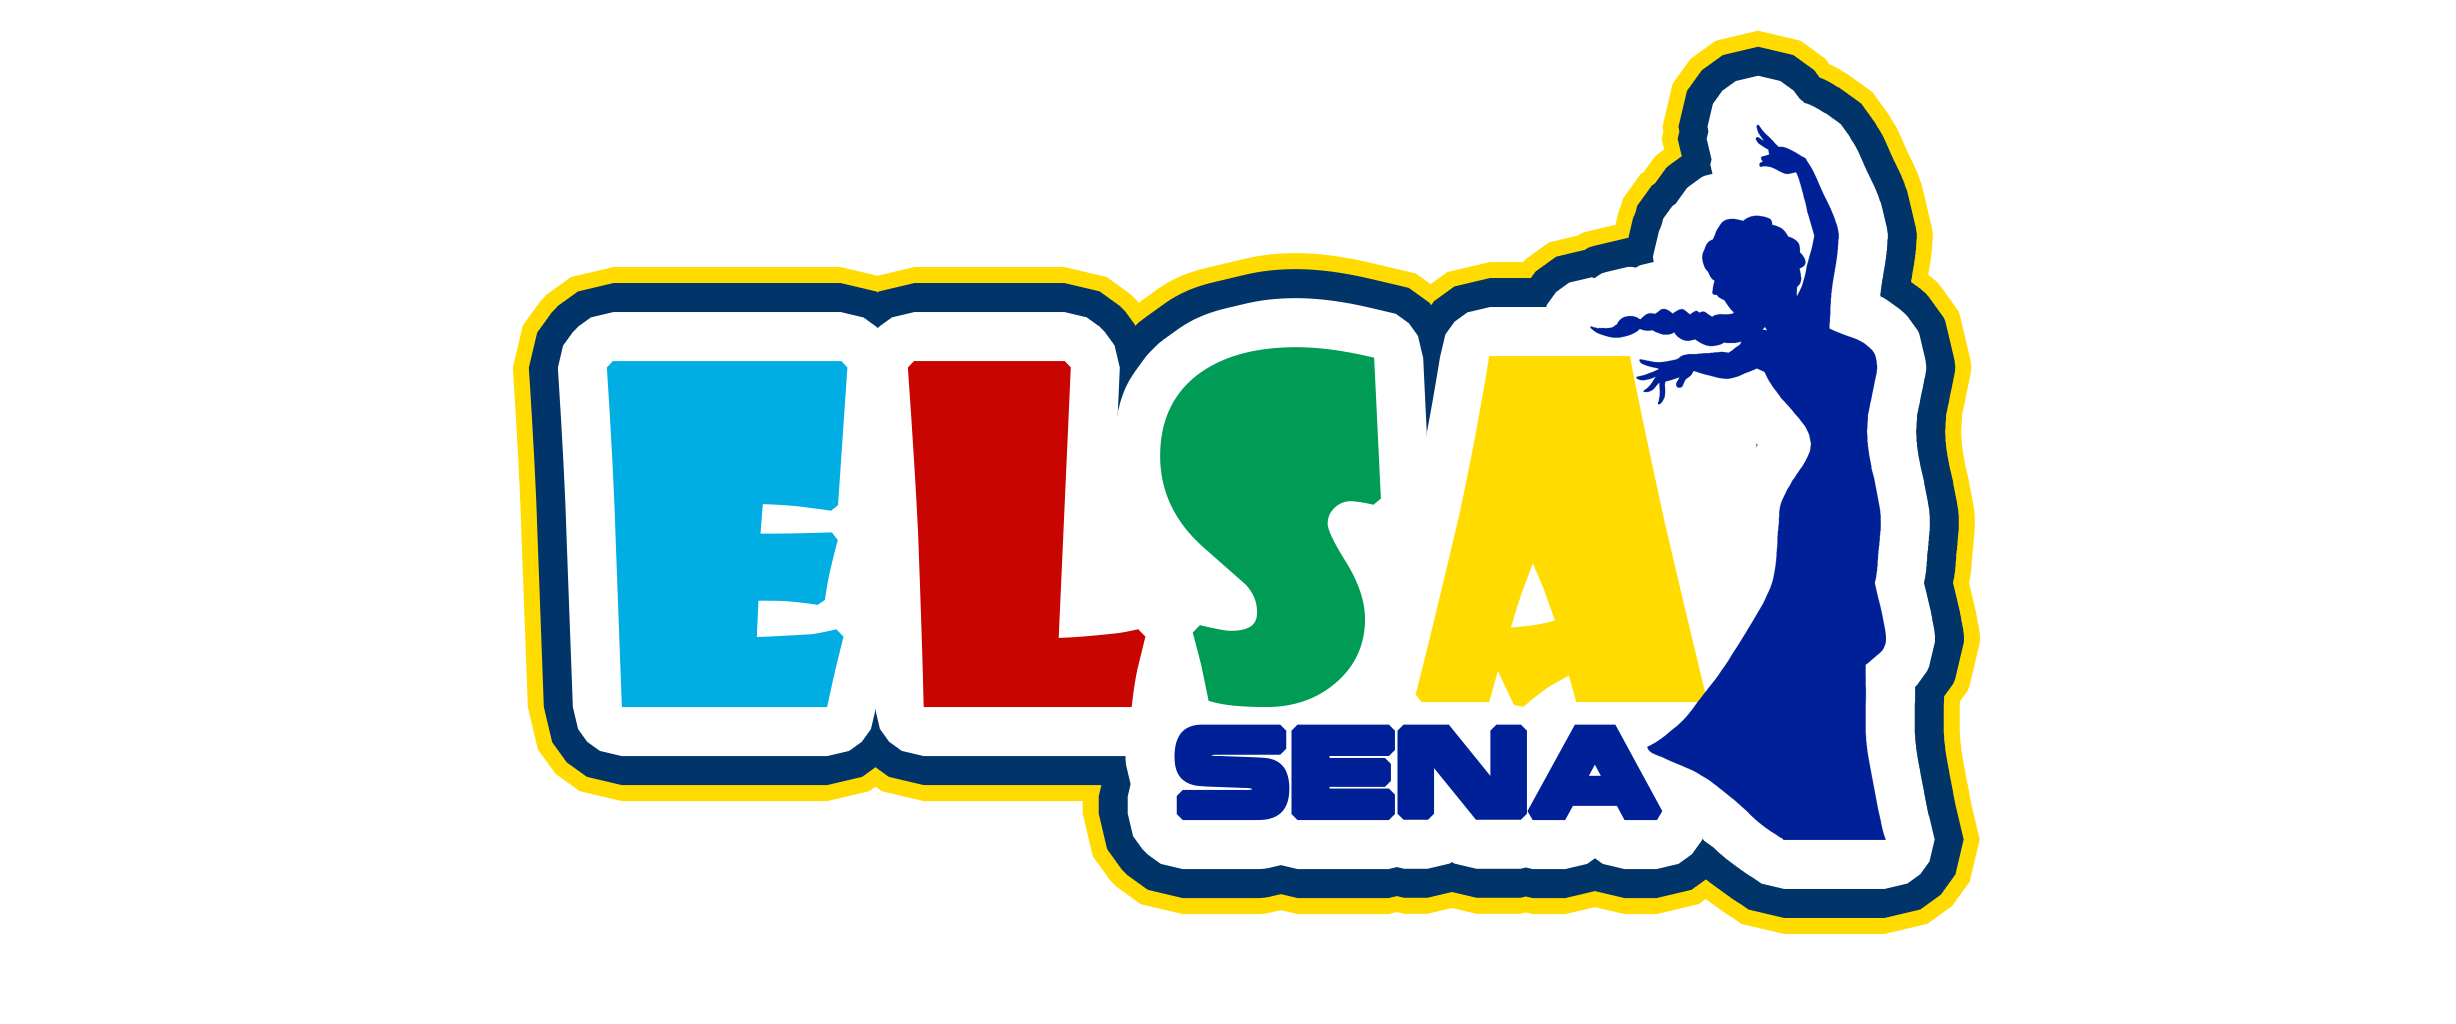 Elsa Sena's Love Carton